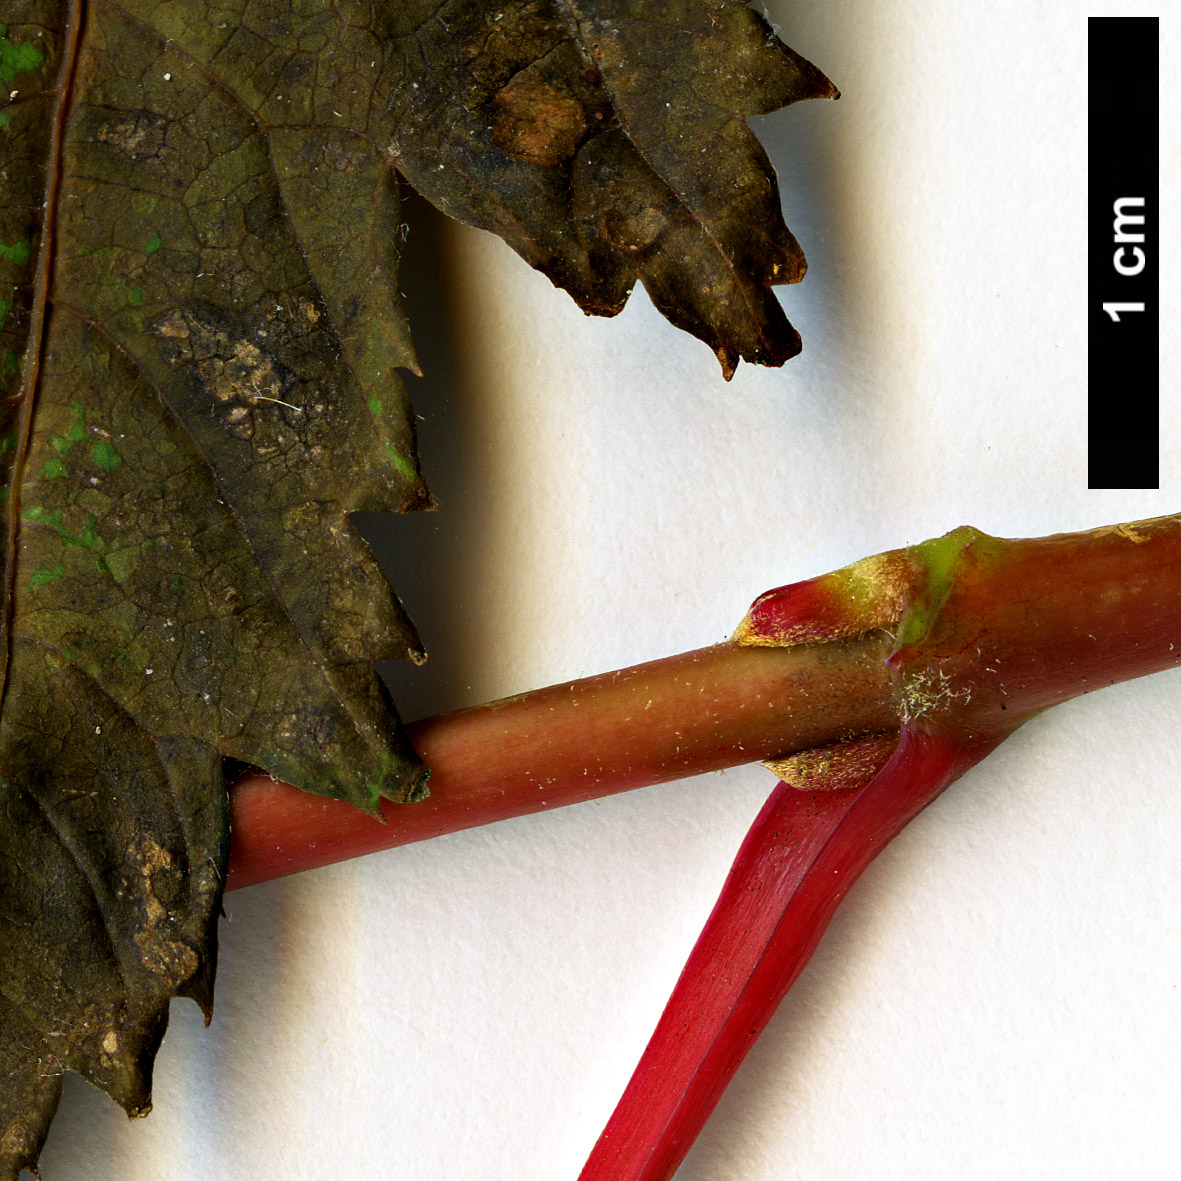 High resolution image: Family: Sapindaceae - Genus: Acer - Taxon: caudatum